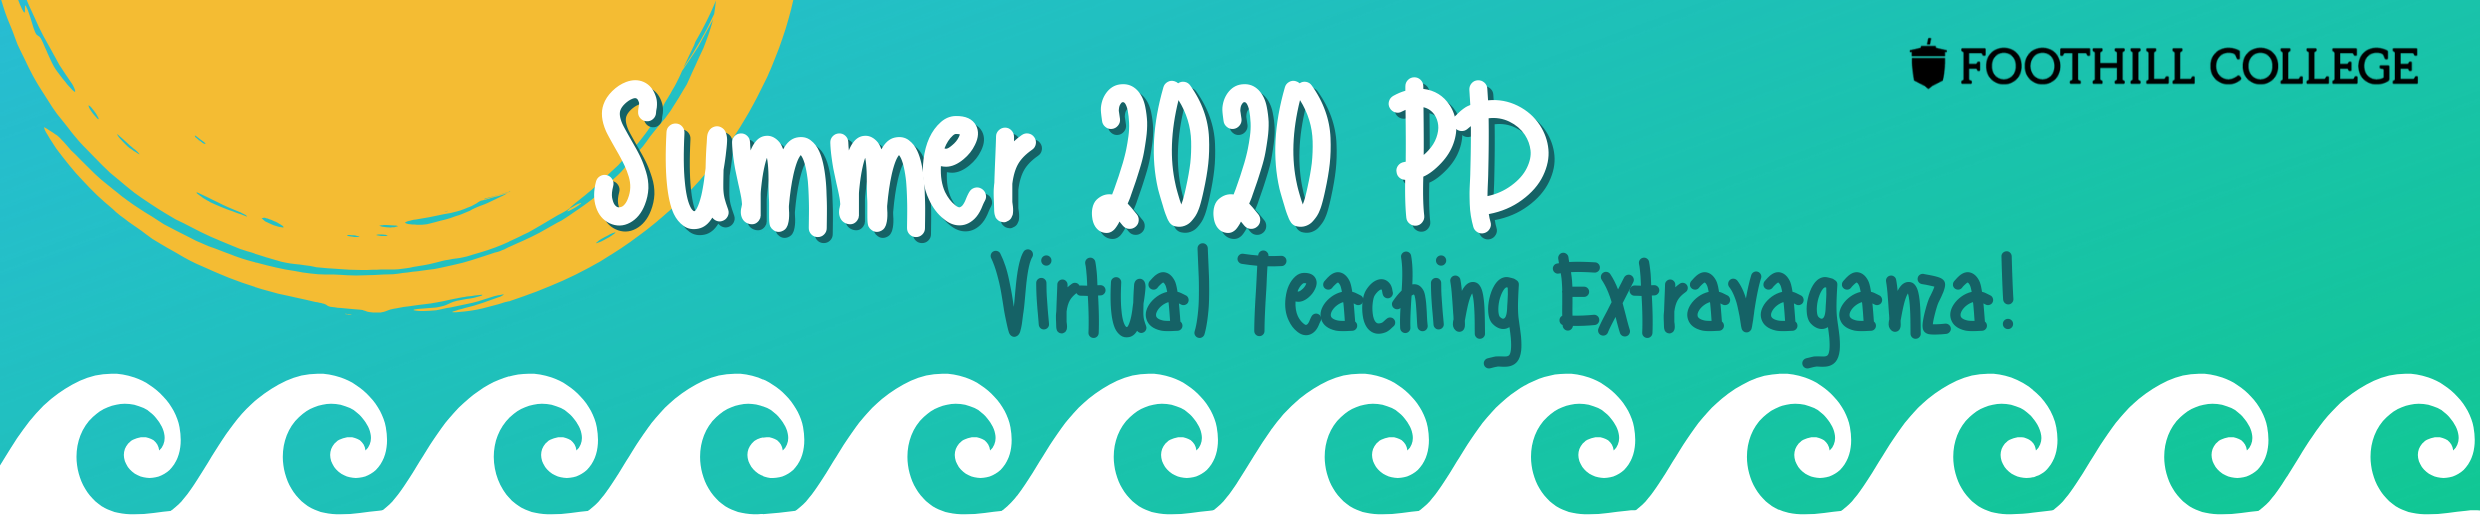 Summer PD 2020 Virtual Teaching Extravaganza